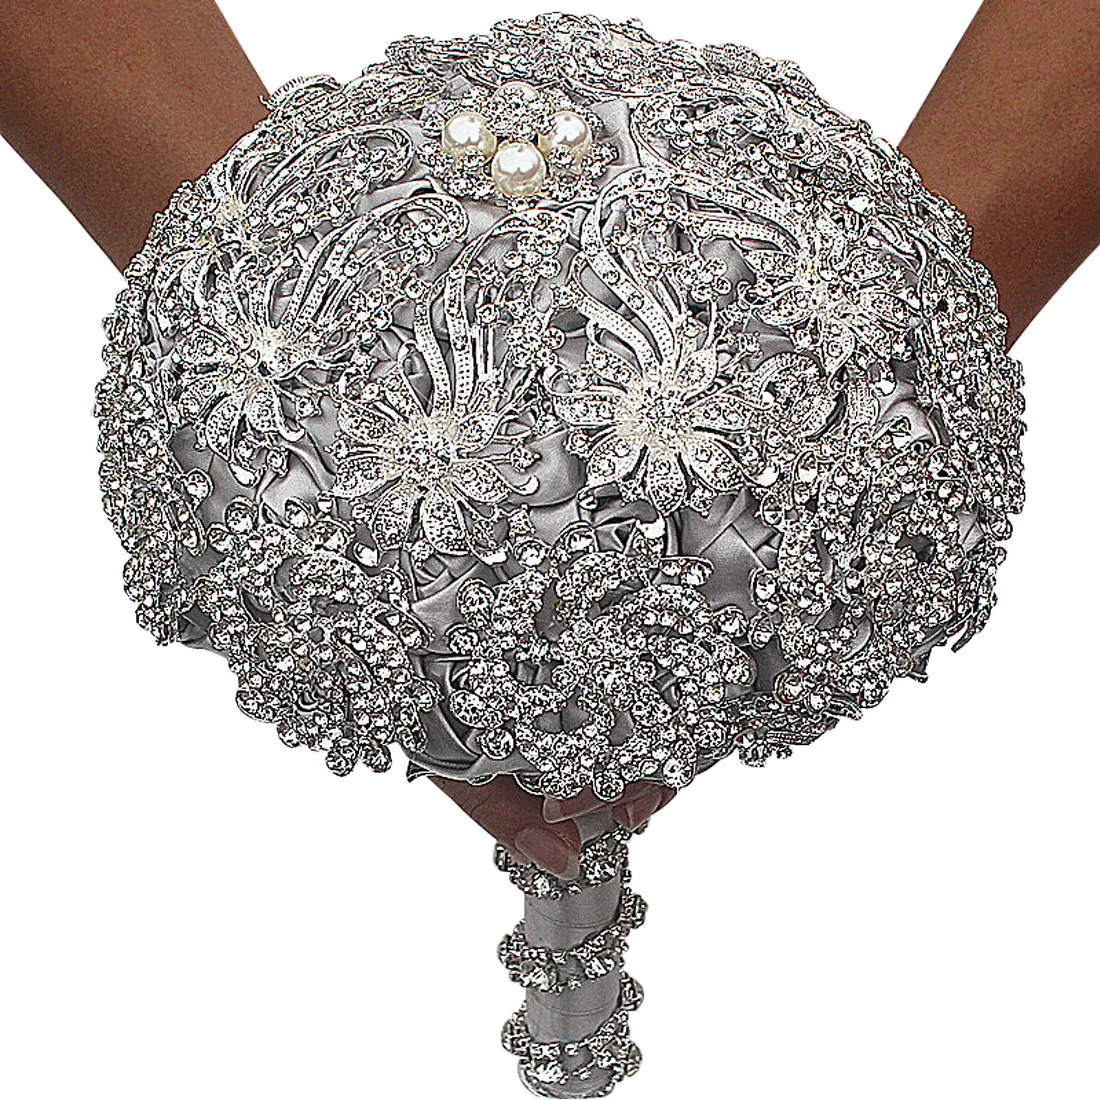 Luksusowy kryształowy broszka broquet kości słoniowej szary kryształowy bureing bukiet satynowe kwiaty ślubne bukiety ślubne akcesoria ślubne